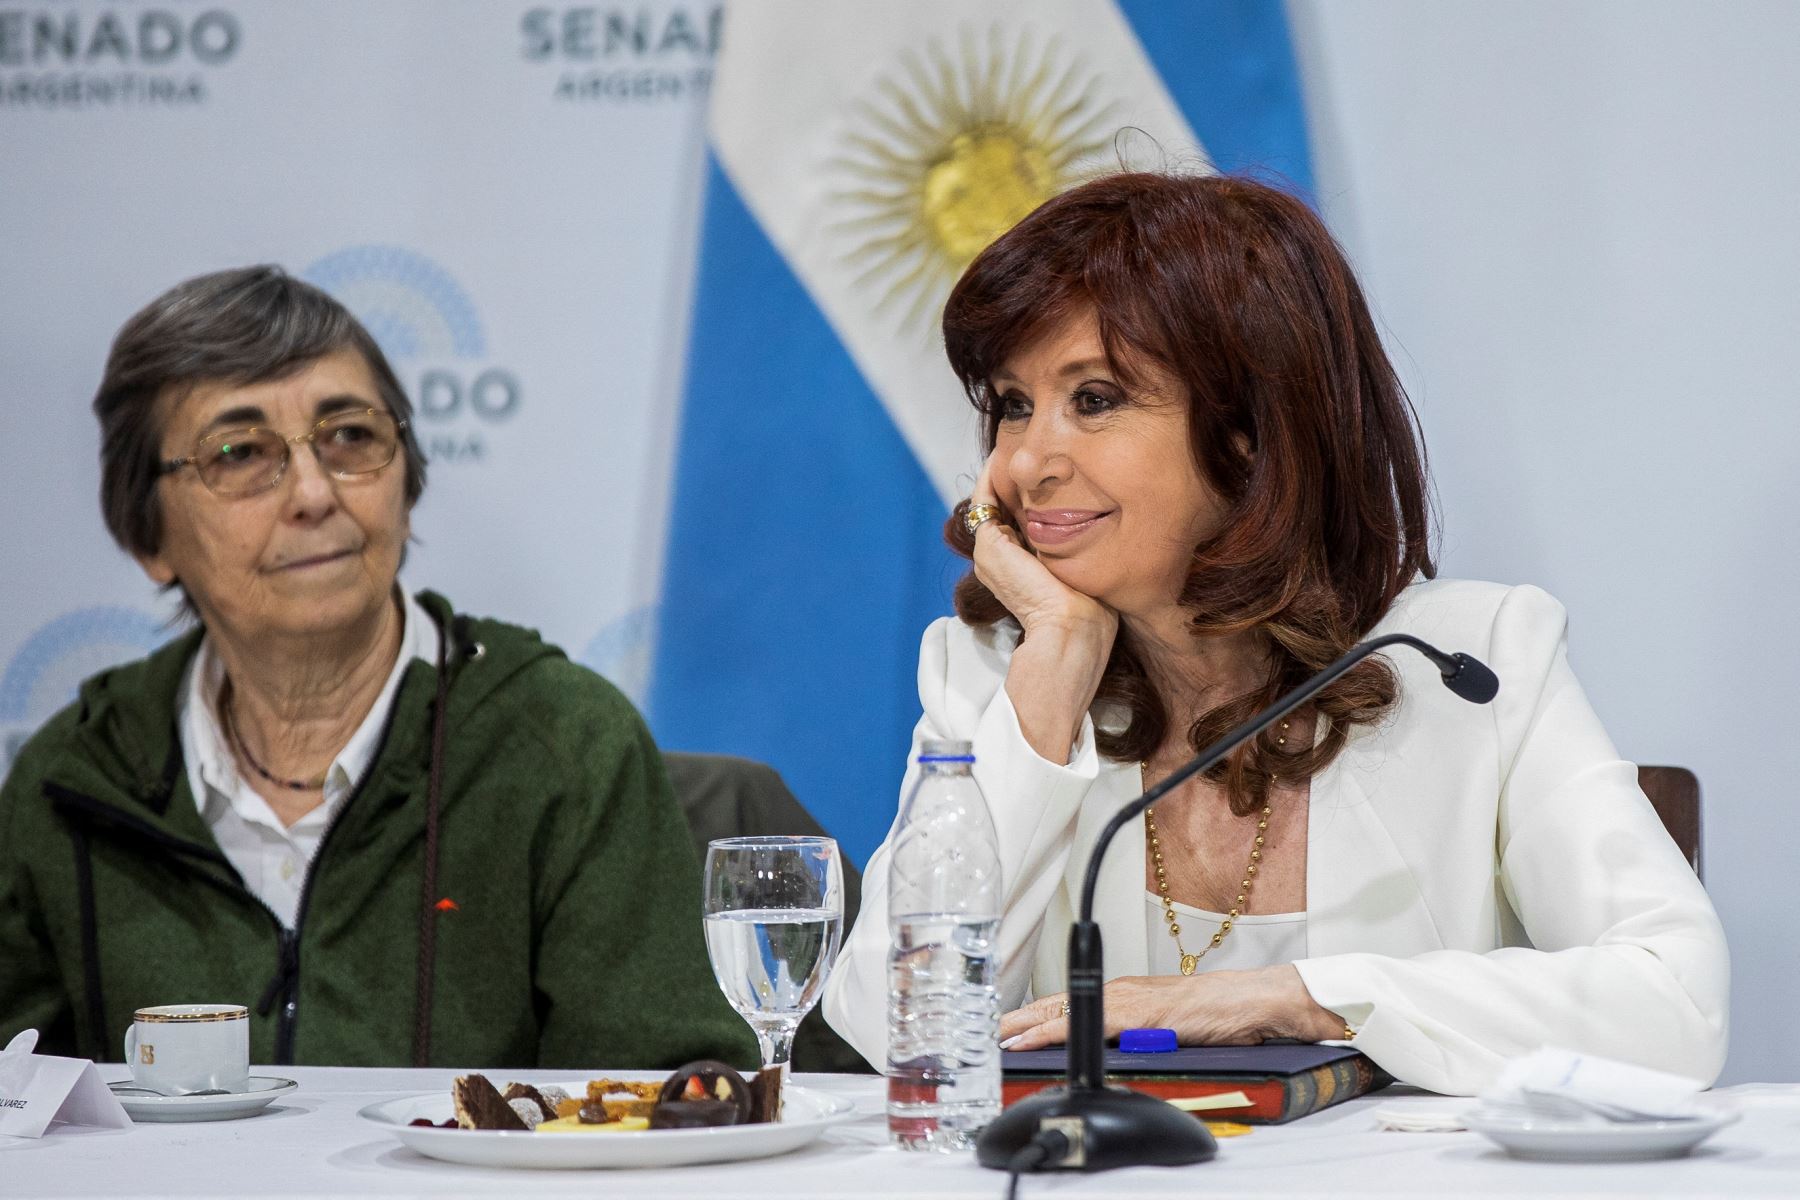 Cristina Kirchner evocó la solidaridad de su compatriota el papa Francisco, luego de ser víctima hace dos semanas de un intento de homicidio a las puertas de su casa en Buenos Aires, del cual resultó ilesa "gracias a Dios y la Virgen". Foto: AFP